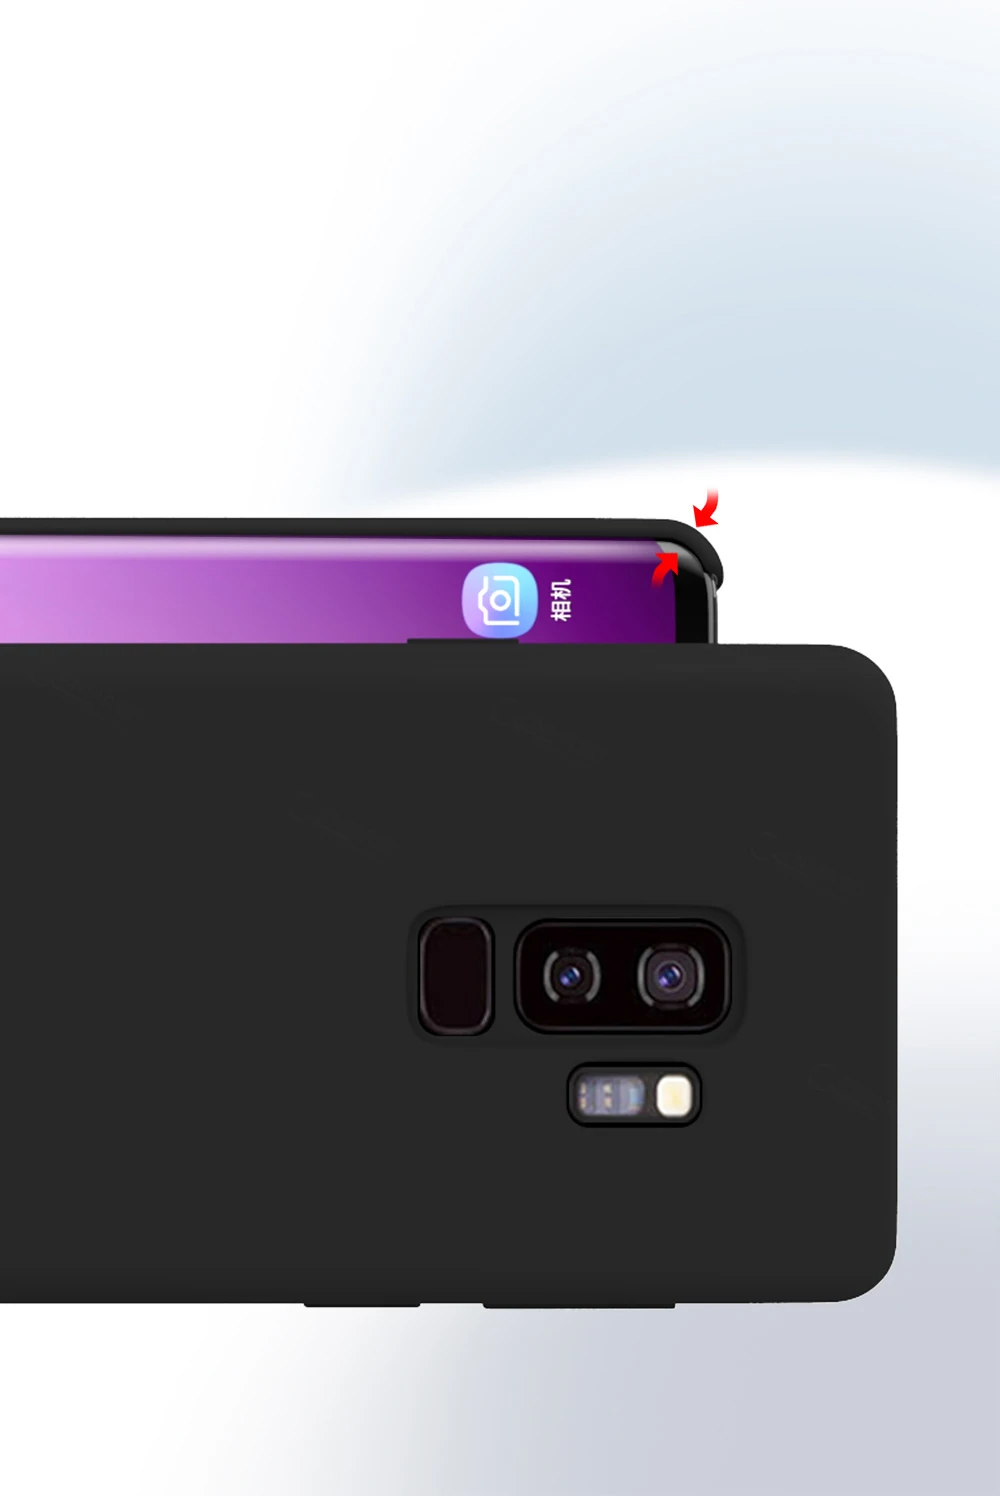 Для samsung S9 чехол мягкий силиконовый защитный чехол для samsung Galaxy S8 S9 S10 5G Plus Note 8 9 10 Pro чехол полиуретан) и силикона с откидной крышкой